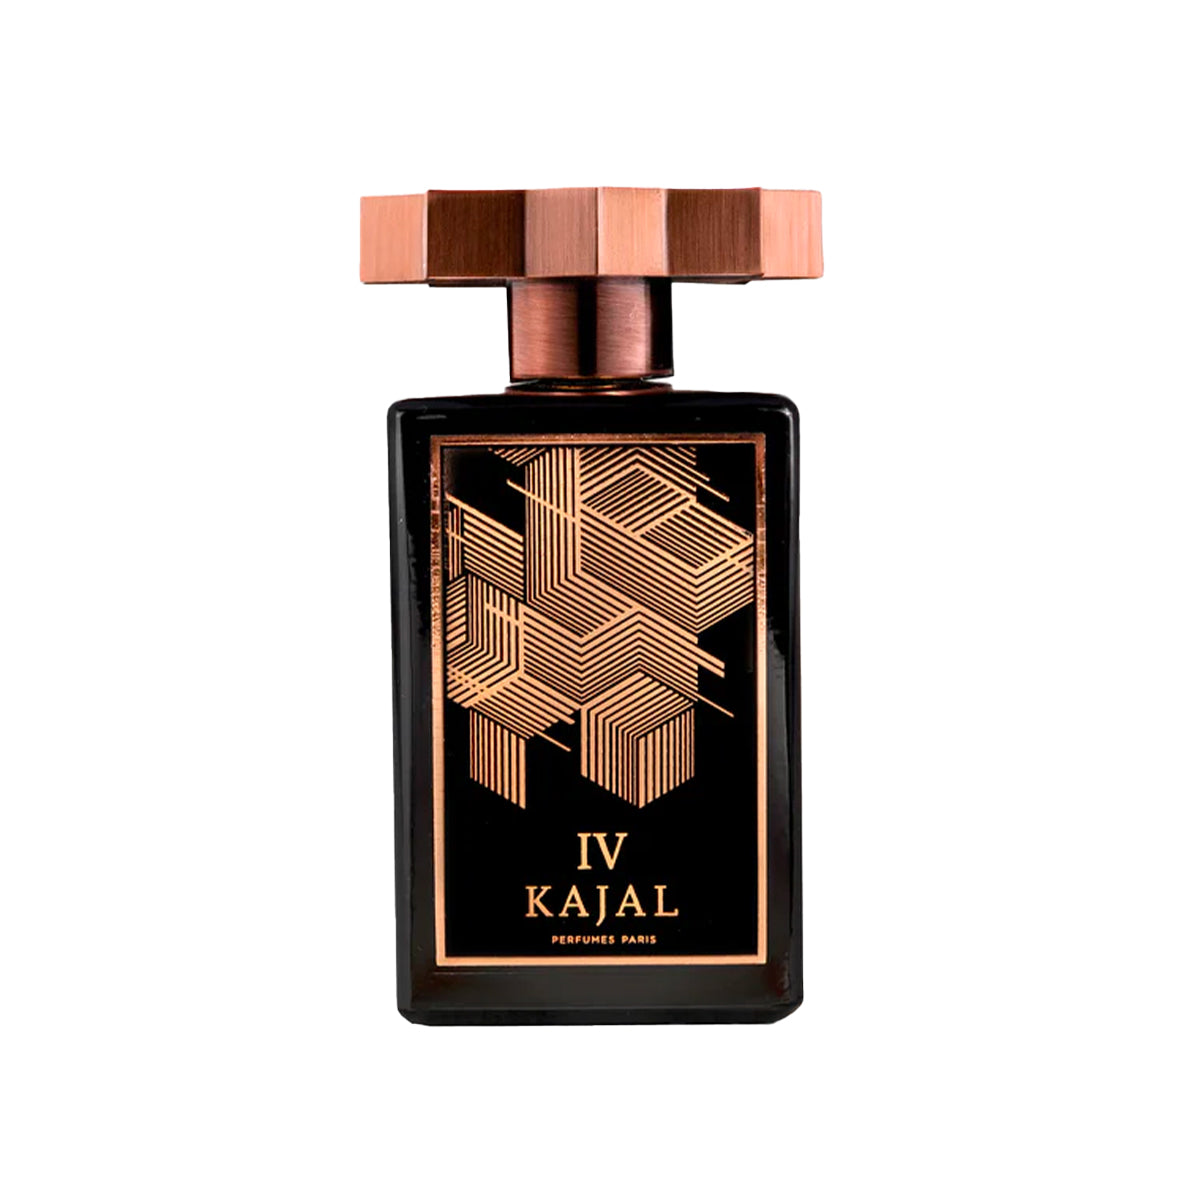 Kajal IV - KAJAL - EDP 100ml